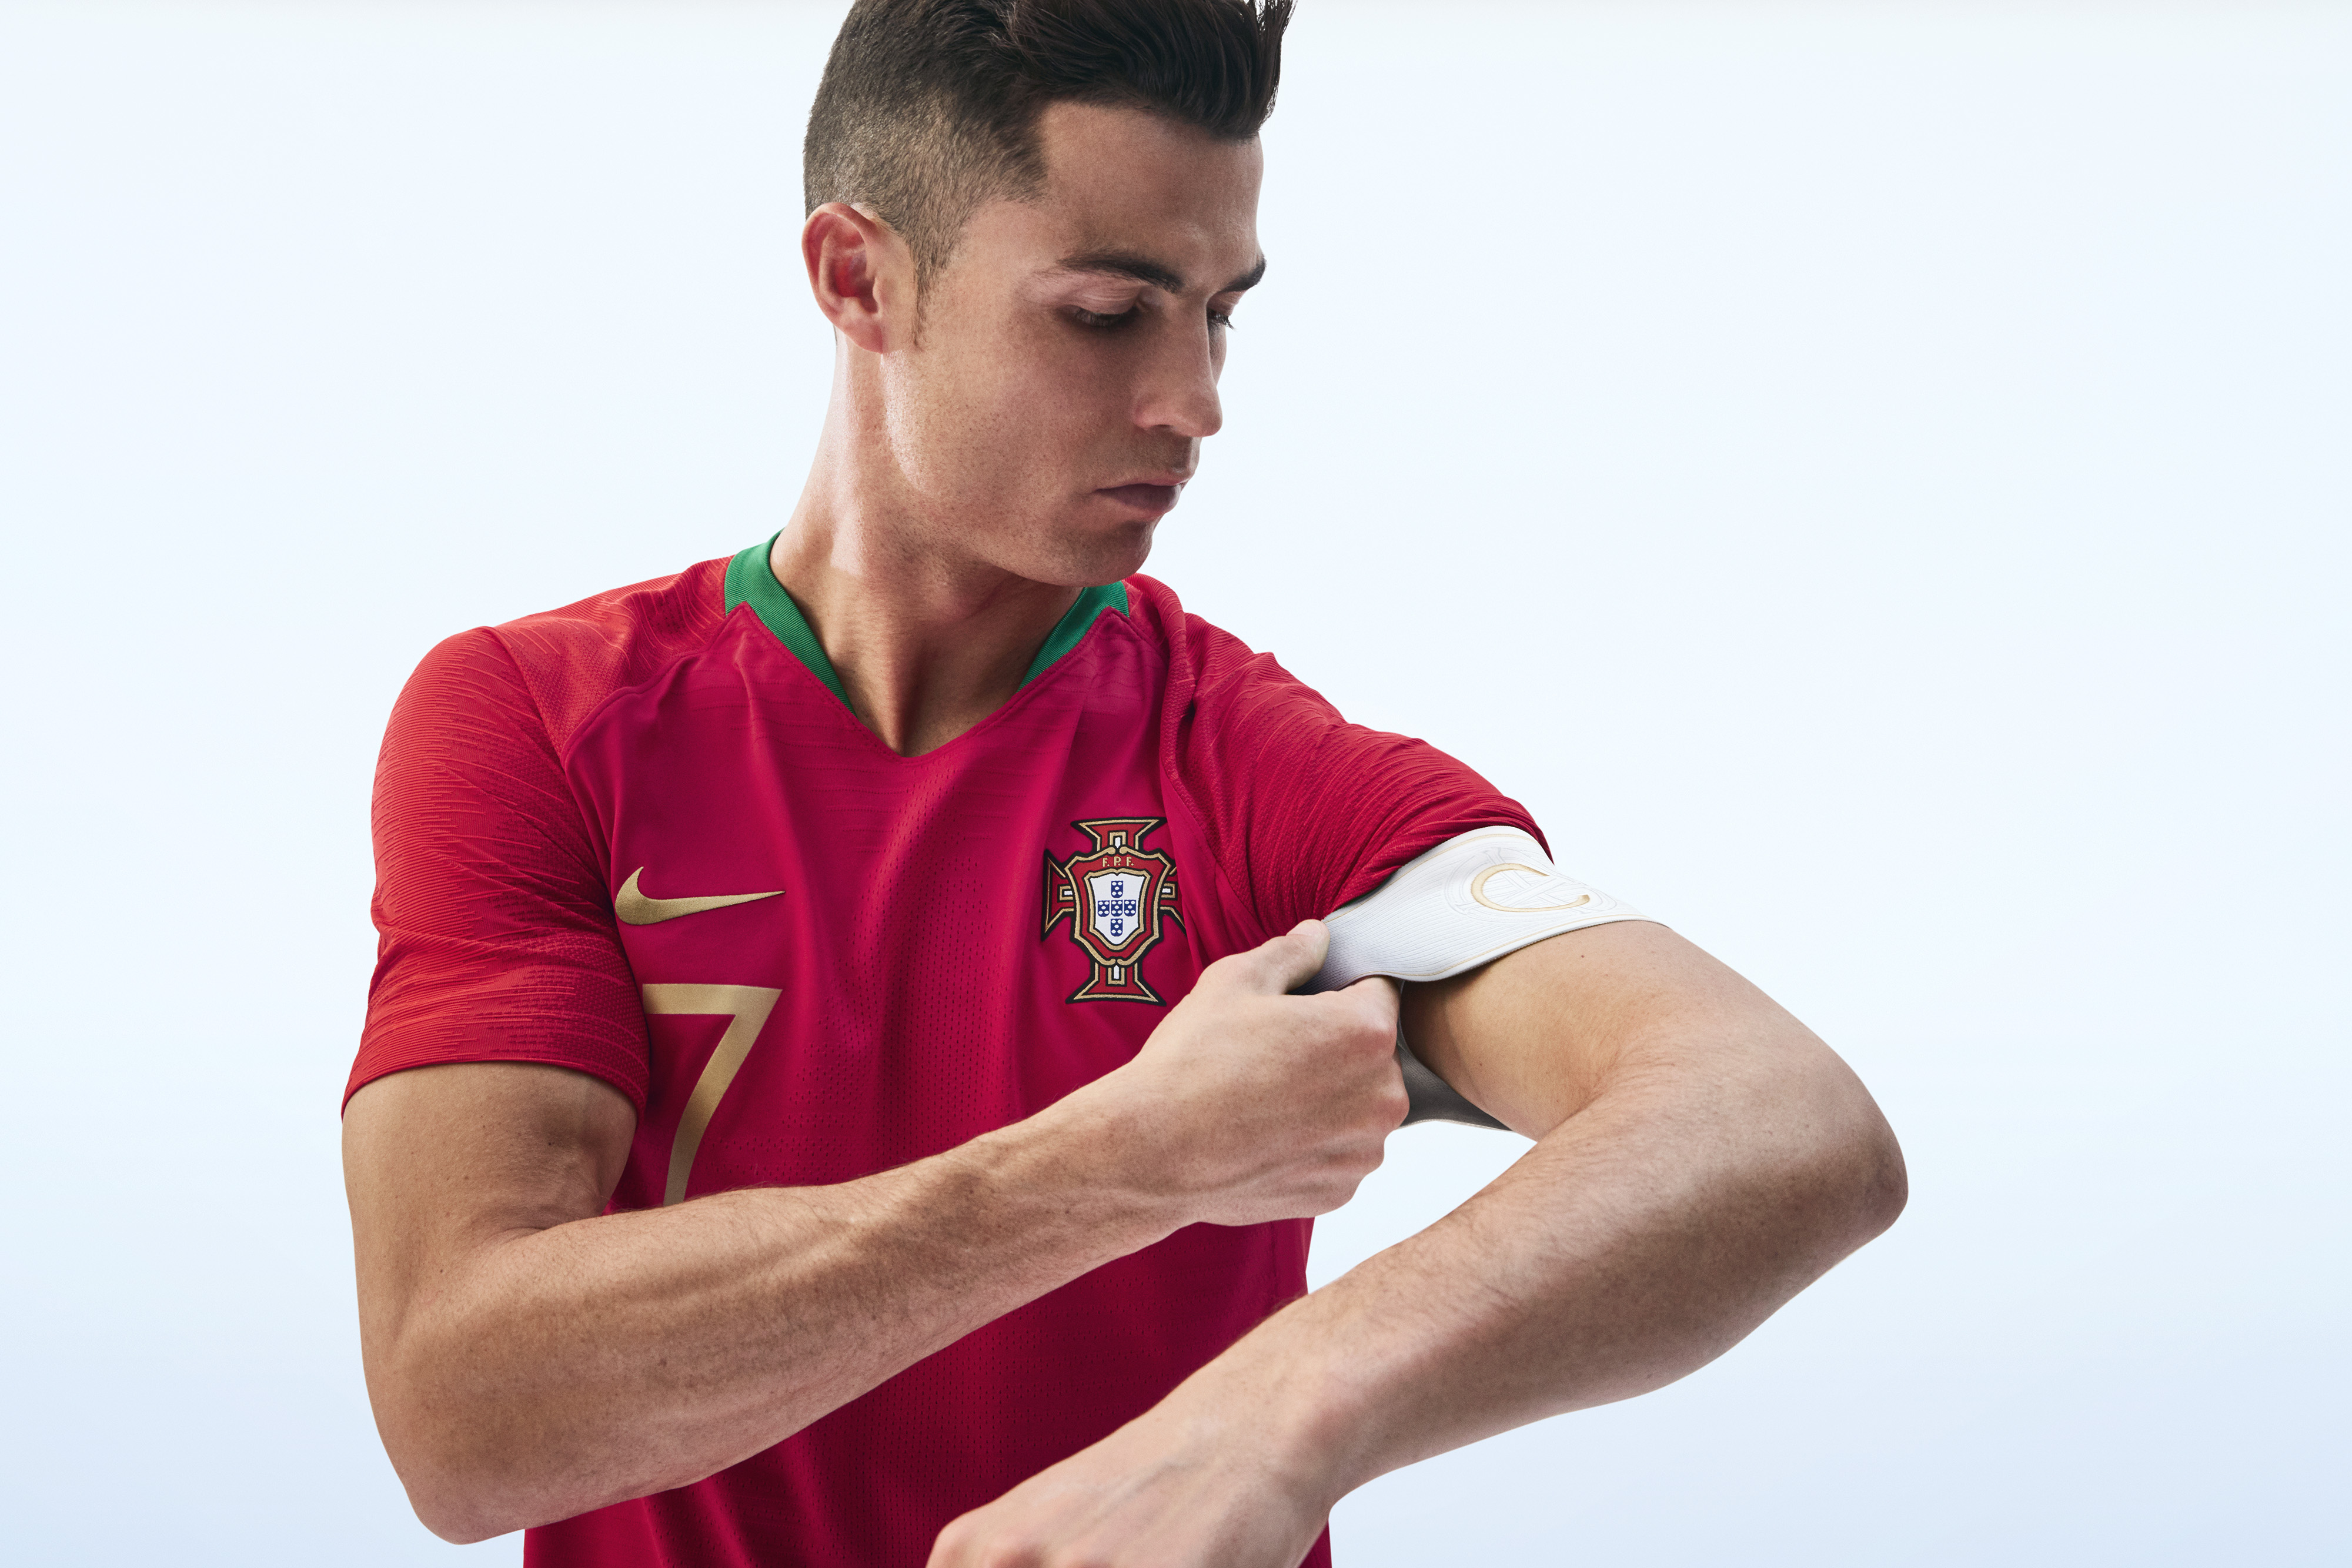 Humedal captura Ciencias Sociales Portugal home - Fotos: Los uniformes del Mundial Rusia 2018 - ESPN